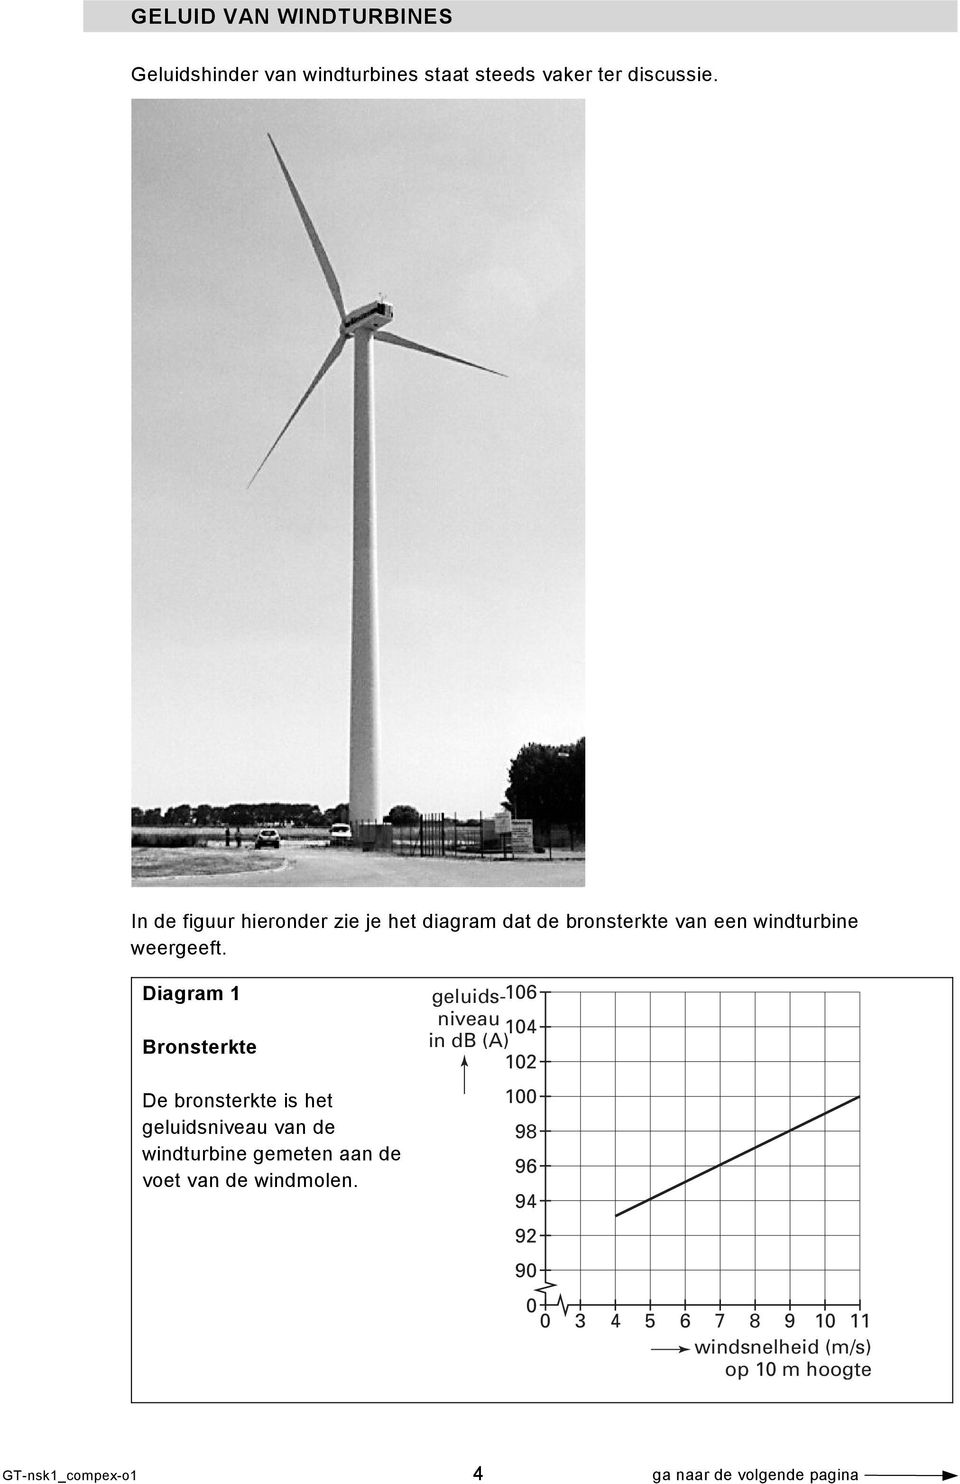 Diagram 1 Bronsterkte De bronsterkte is het geluidsniveau van de windturbine gemeten aan de voet van de windmolen.